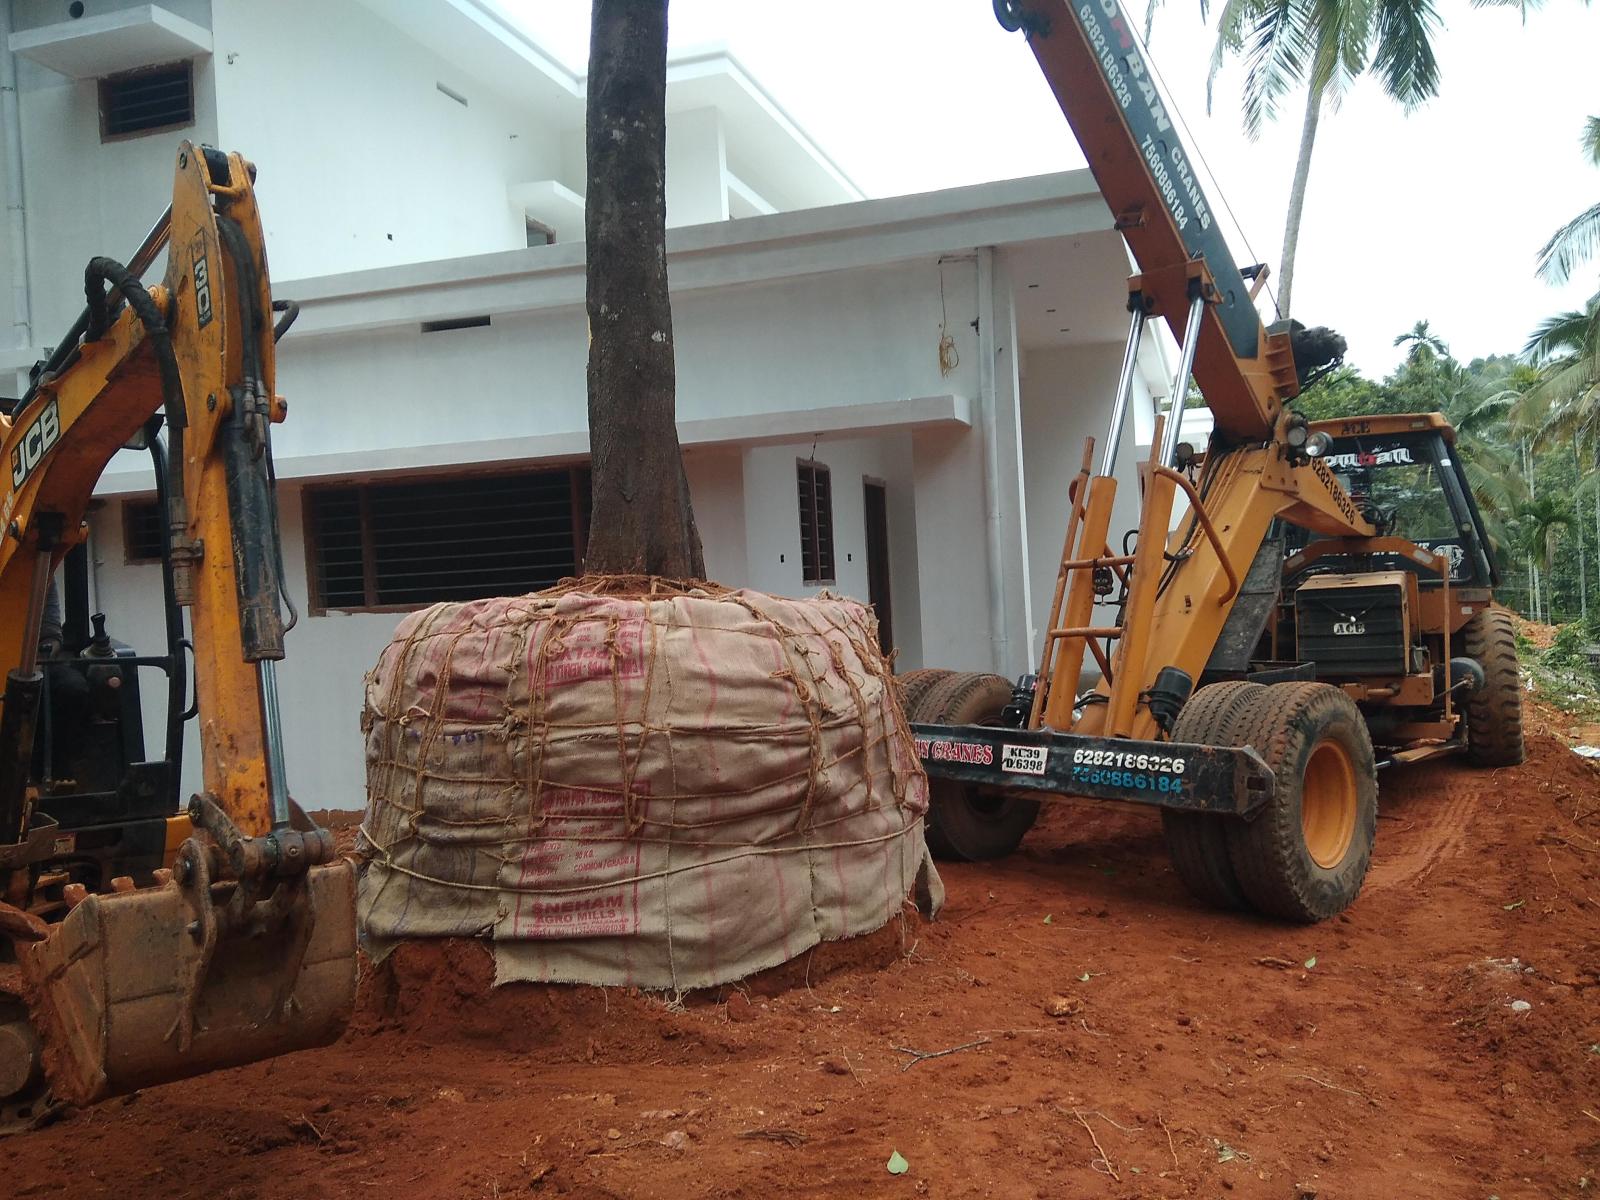 കുടംപുളി മരം പറിച്ചു നടൽ Tree transplantation / Tree relocation / Tree translocation / Tree burlapping service / Tree moving Tree shifting services in Malappuram Kerala India.